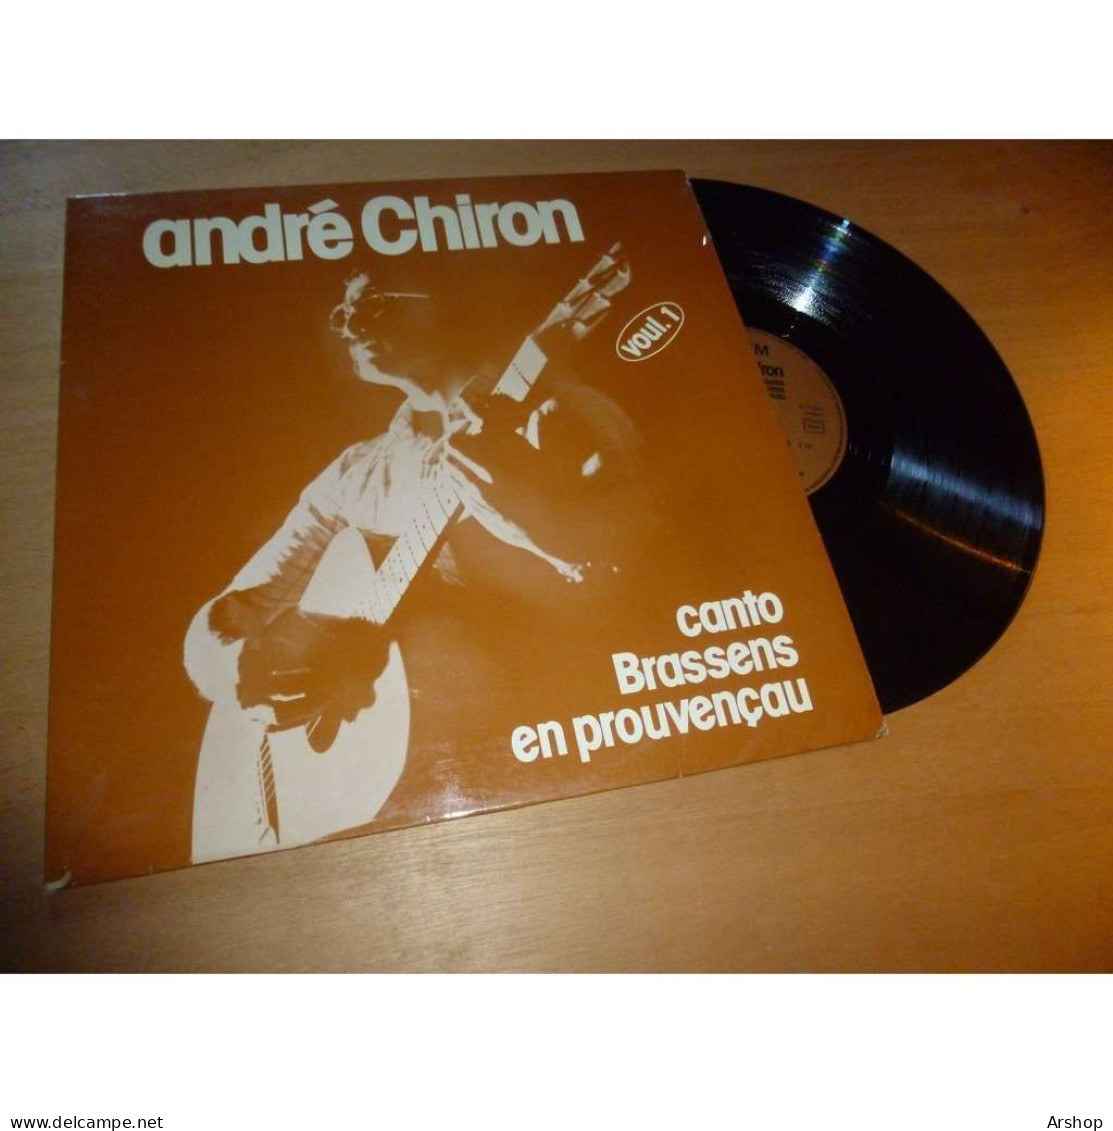 ANDRÉ CHIRON Canto GEORGES BRASSENS En Provencau - SAPEM SAP 204 Lp 1979 - Other - French Music